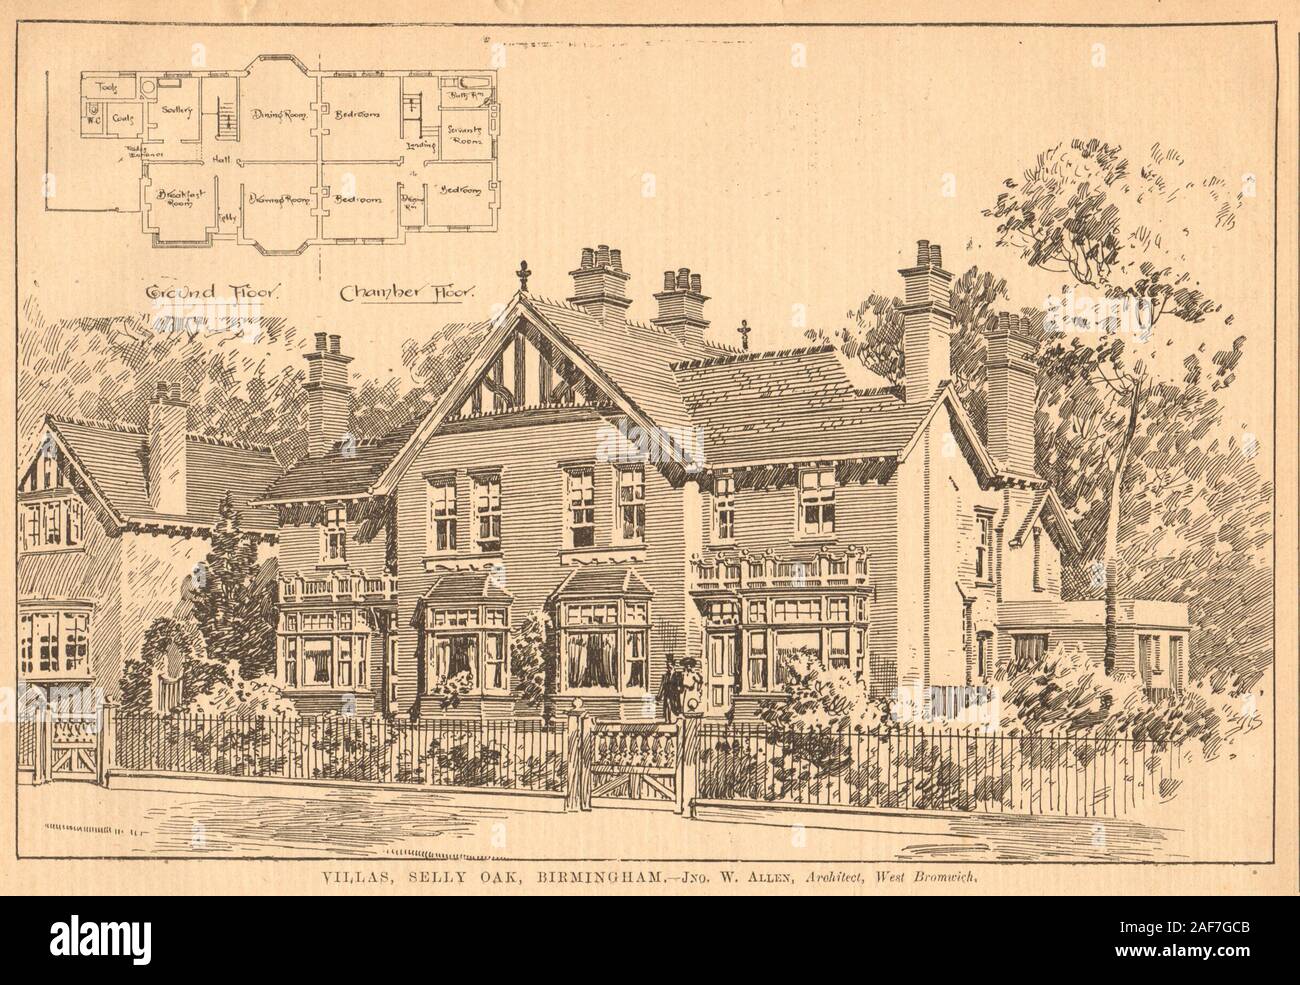 Villas, Selly Oak, Birmingham - Jno. W. Allen, Architect, West Bromwich 1903 Stock Photo